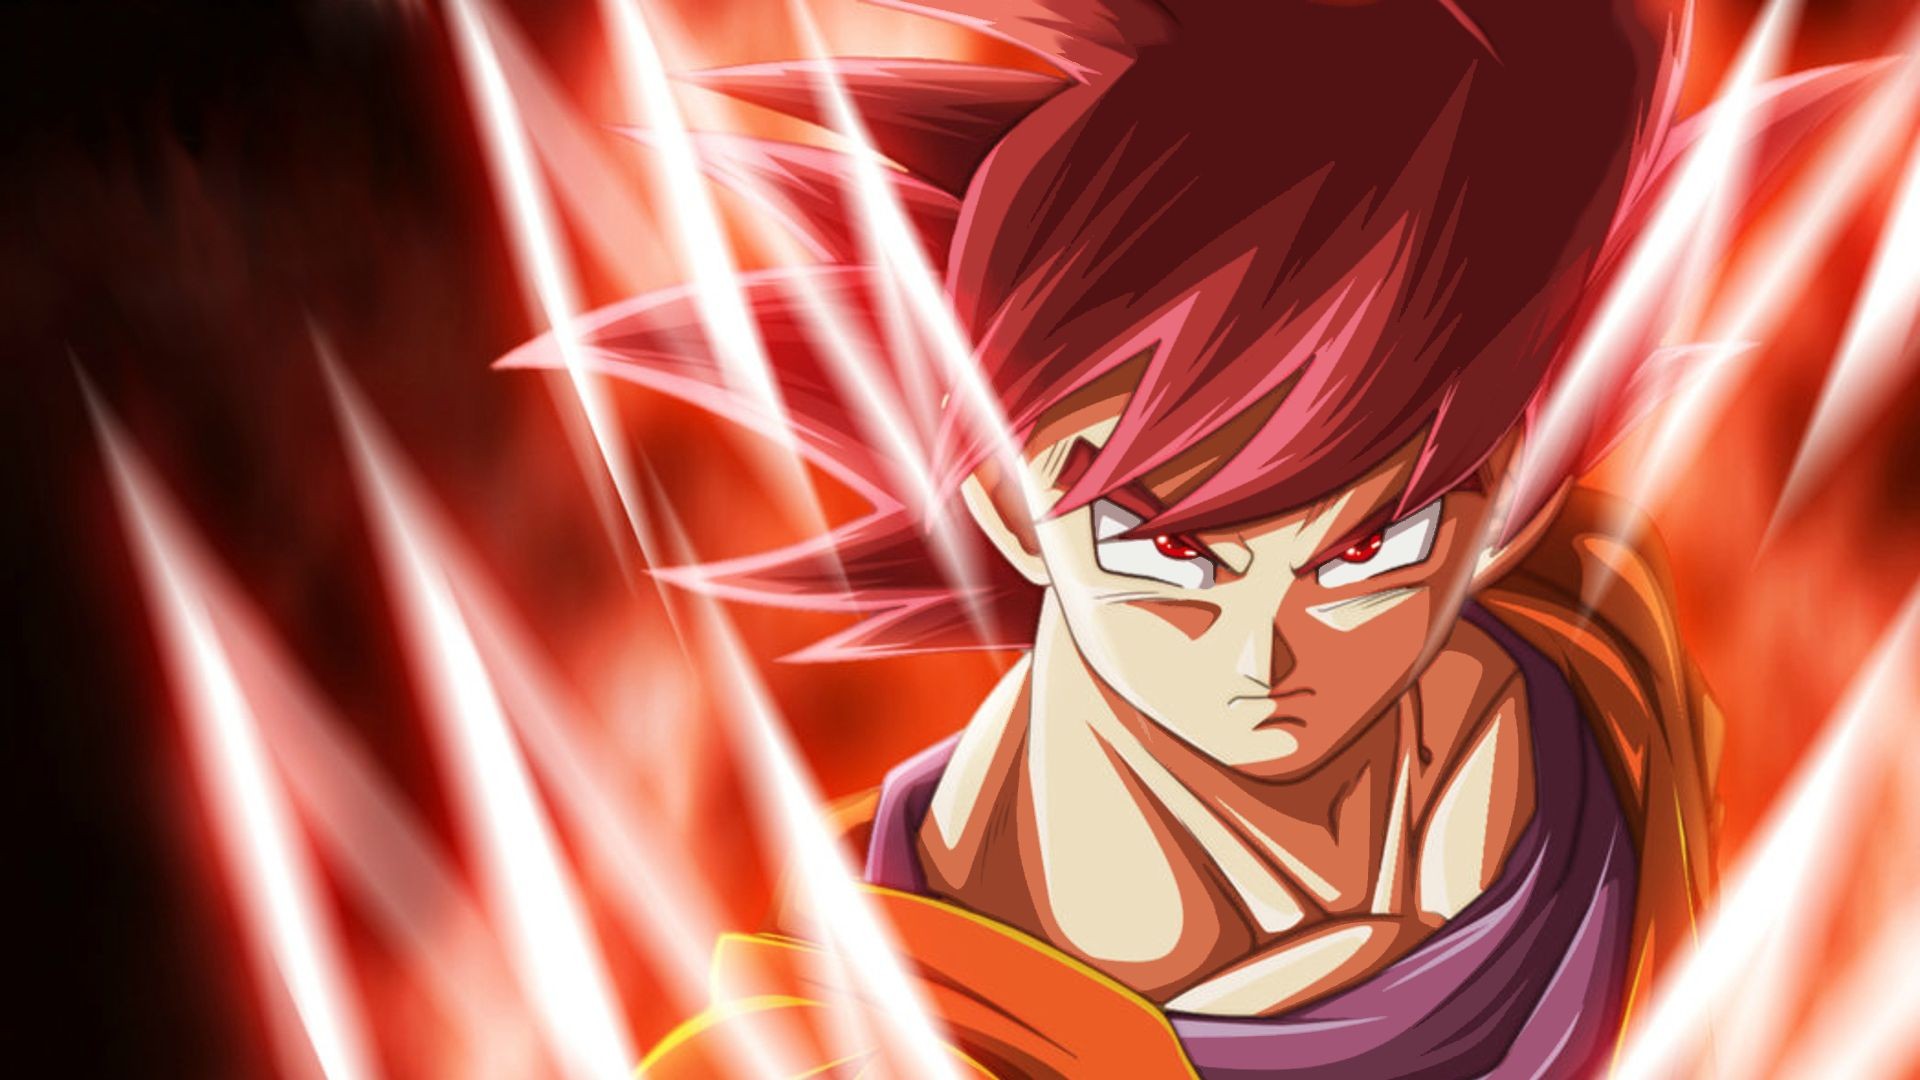 Descarga gratuita de fondo de pantalla para móvil de Dragon Ball Z, Animado, Goku, Dragon Ball, Super Saiyan Rosado.